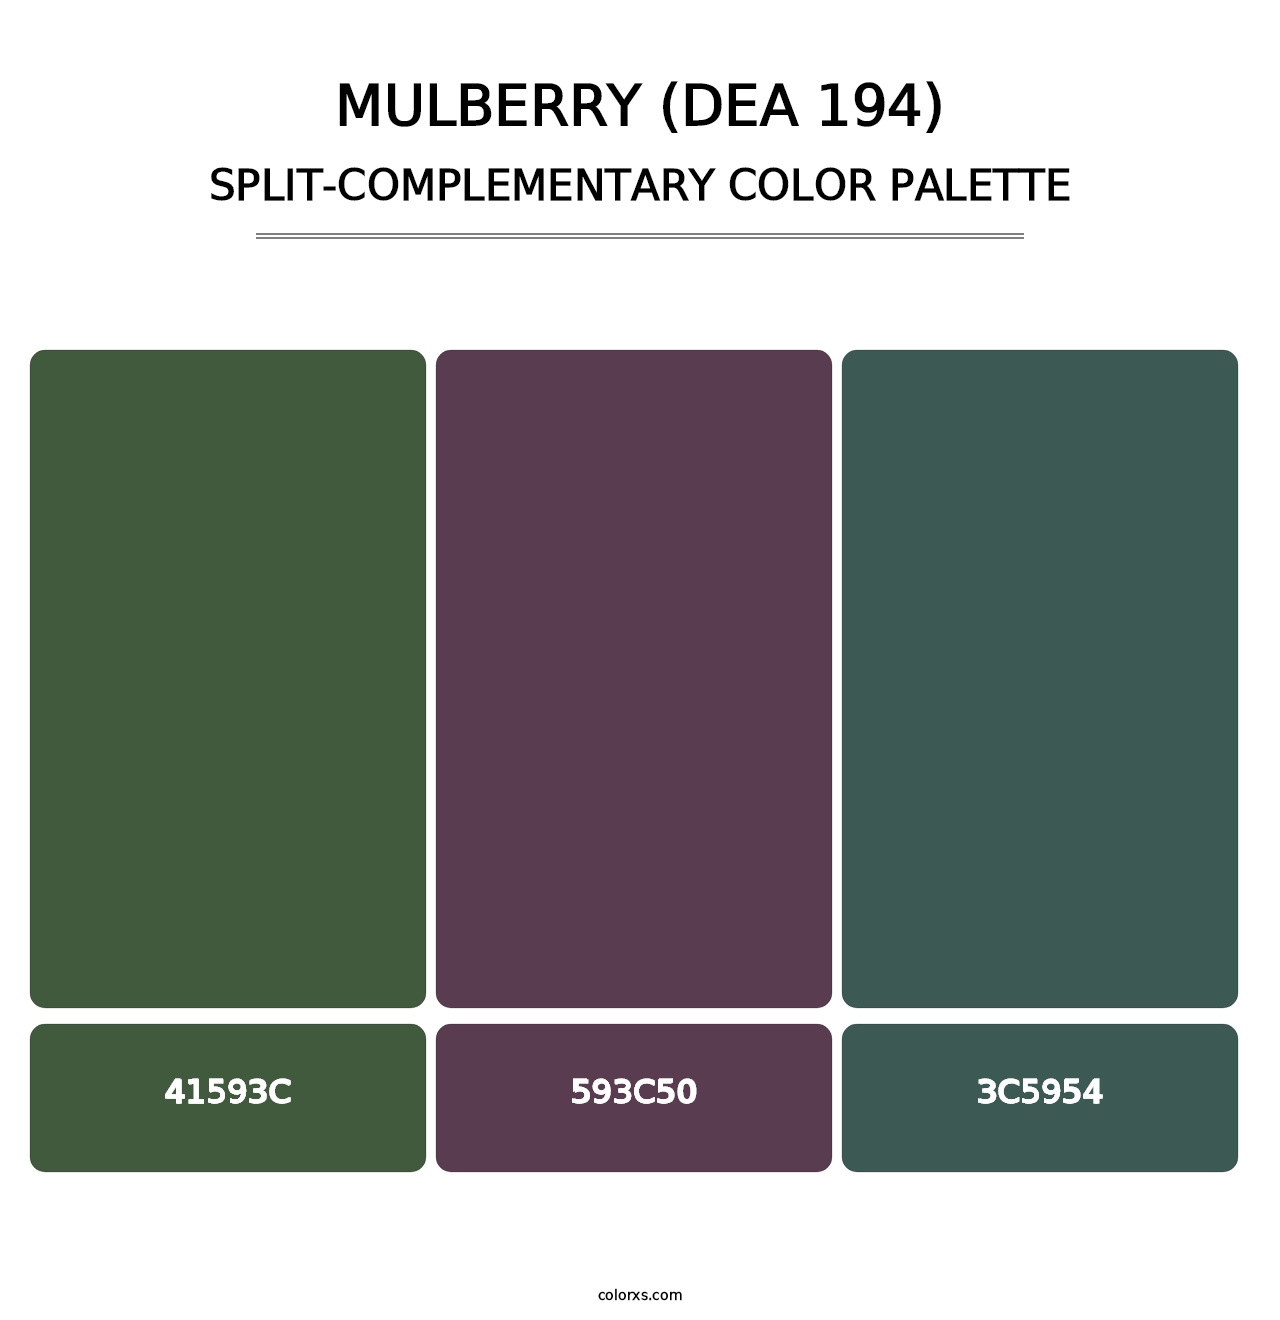 Mulberry (DEA 194) - Split-Complementary Color Palette